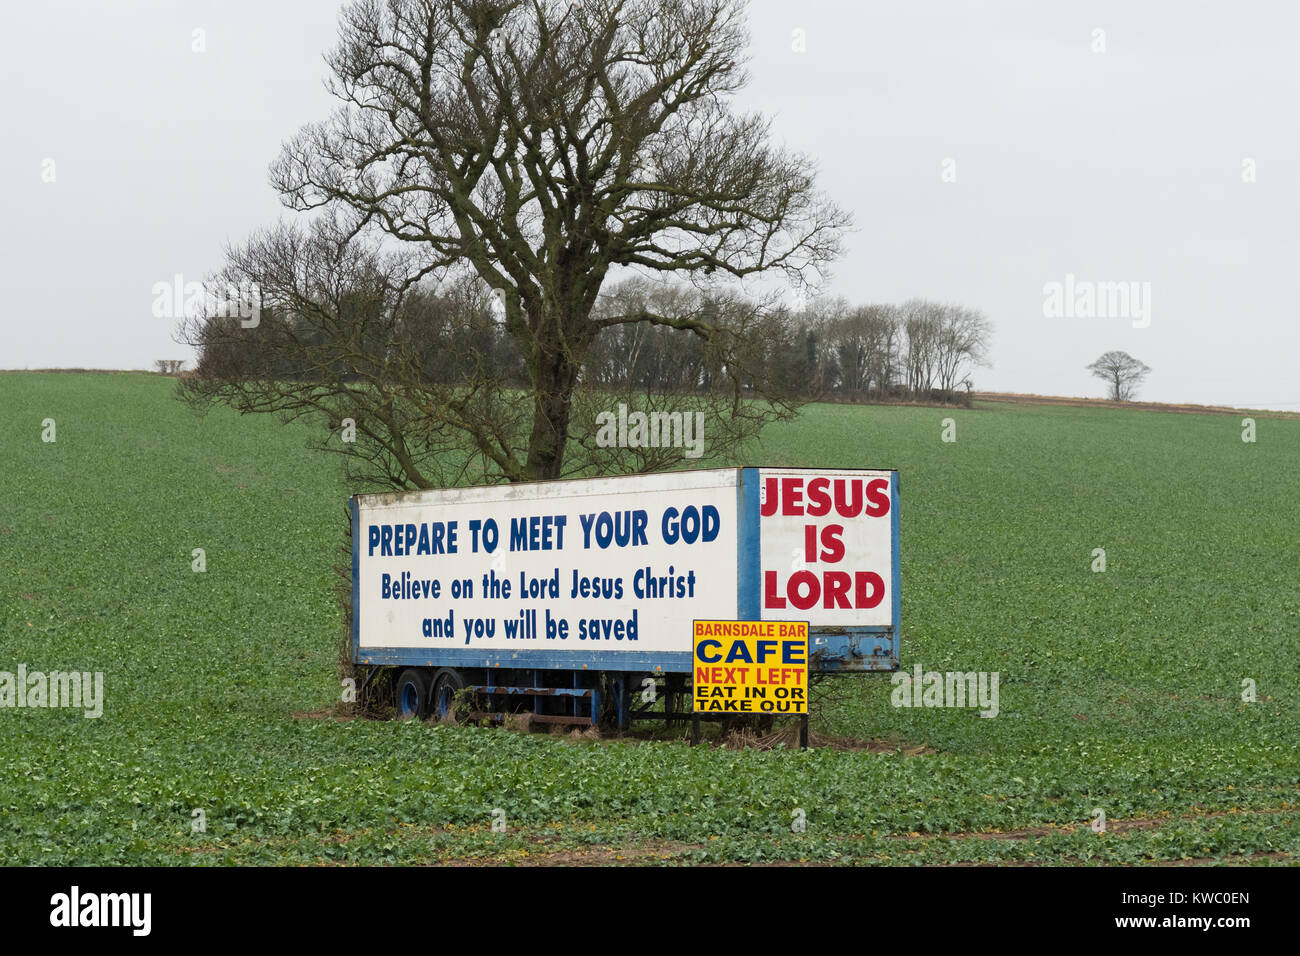 Jésus est Seigneur se préparer à rencontrer votre Dieu message chrétien sur remorque poids lourds en stationnement à côté de l'autoroute A1 près de Pontefract, UK Banque D'Images